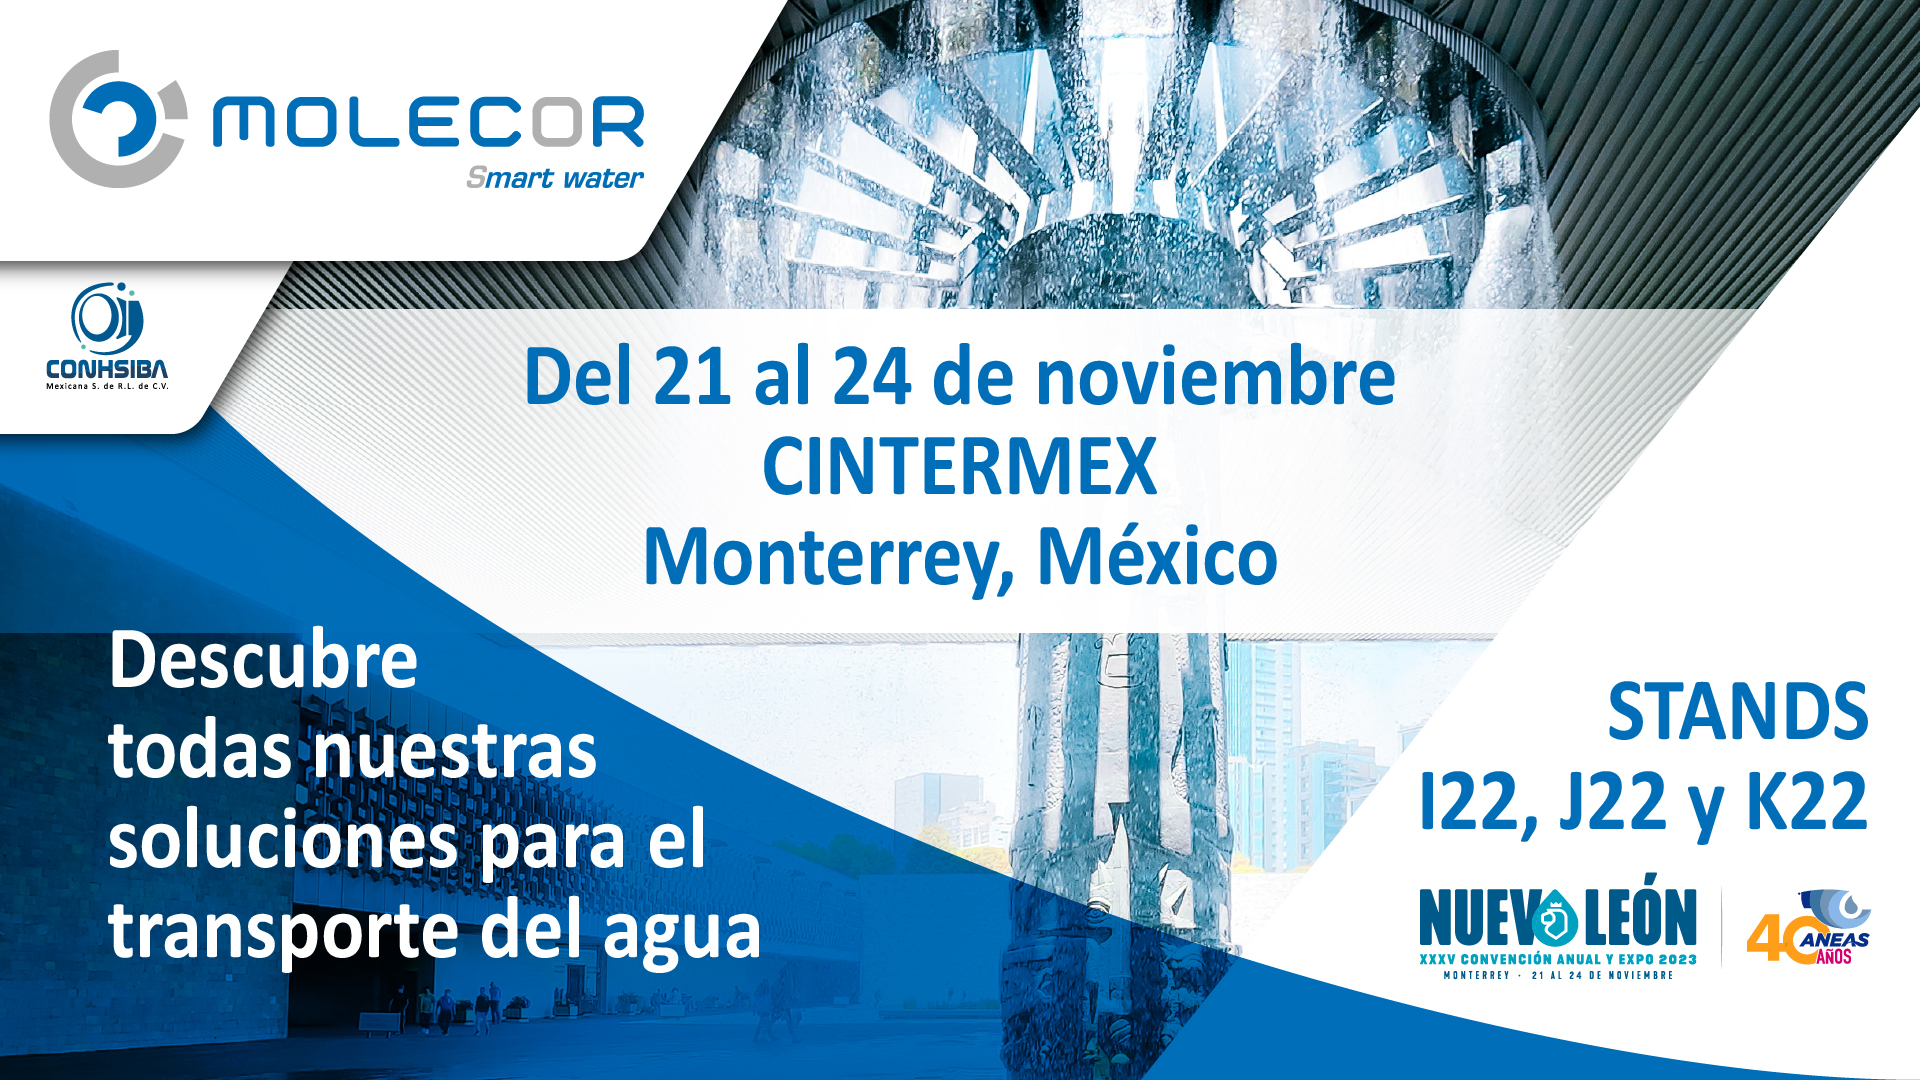 Molecor participa en la XXXV Convención Anual y Expo de ANEAS en Monterrey, Méjico